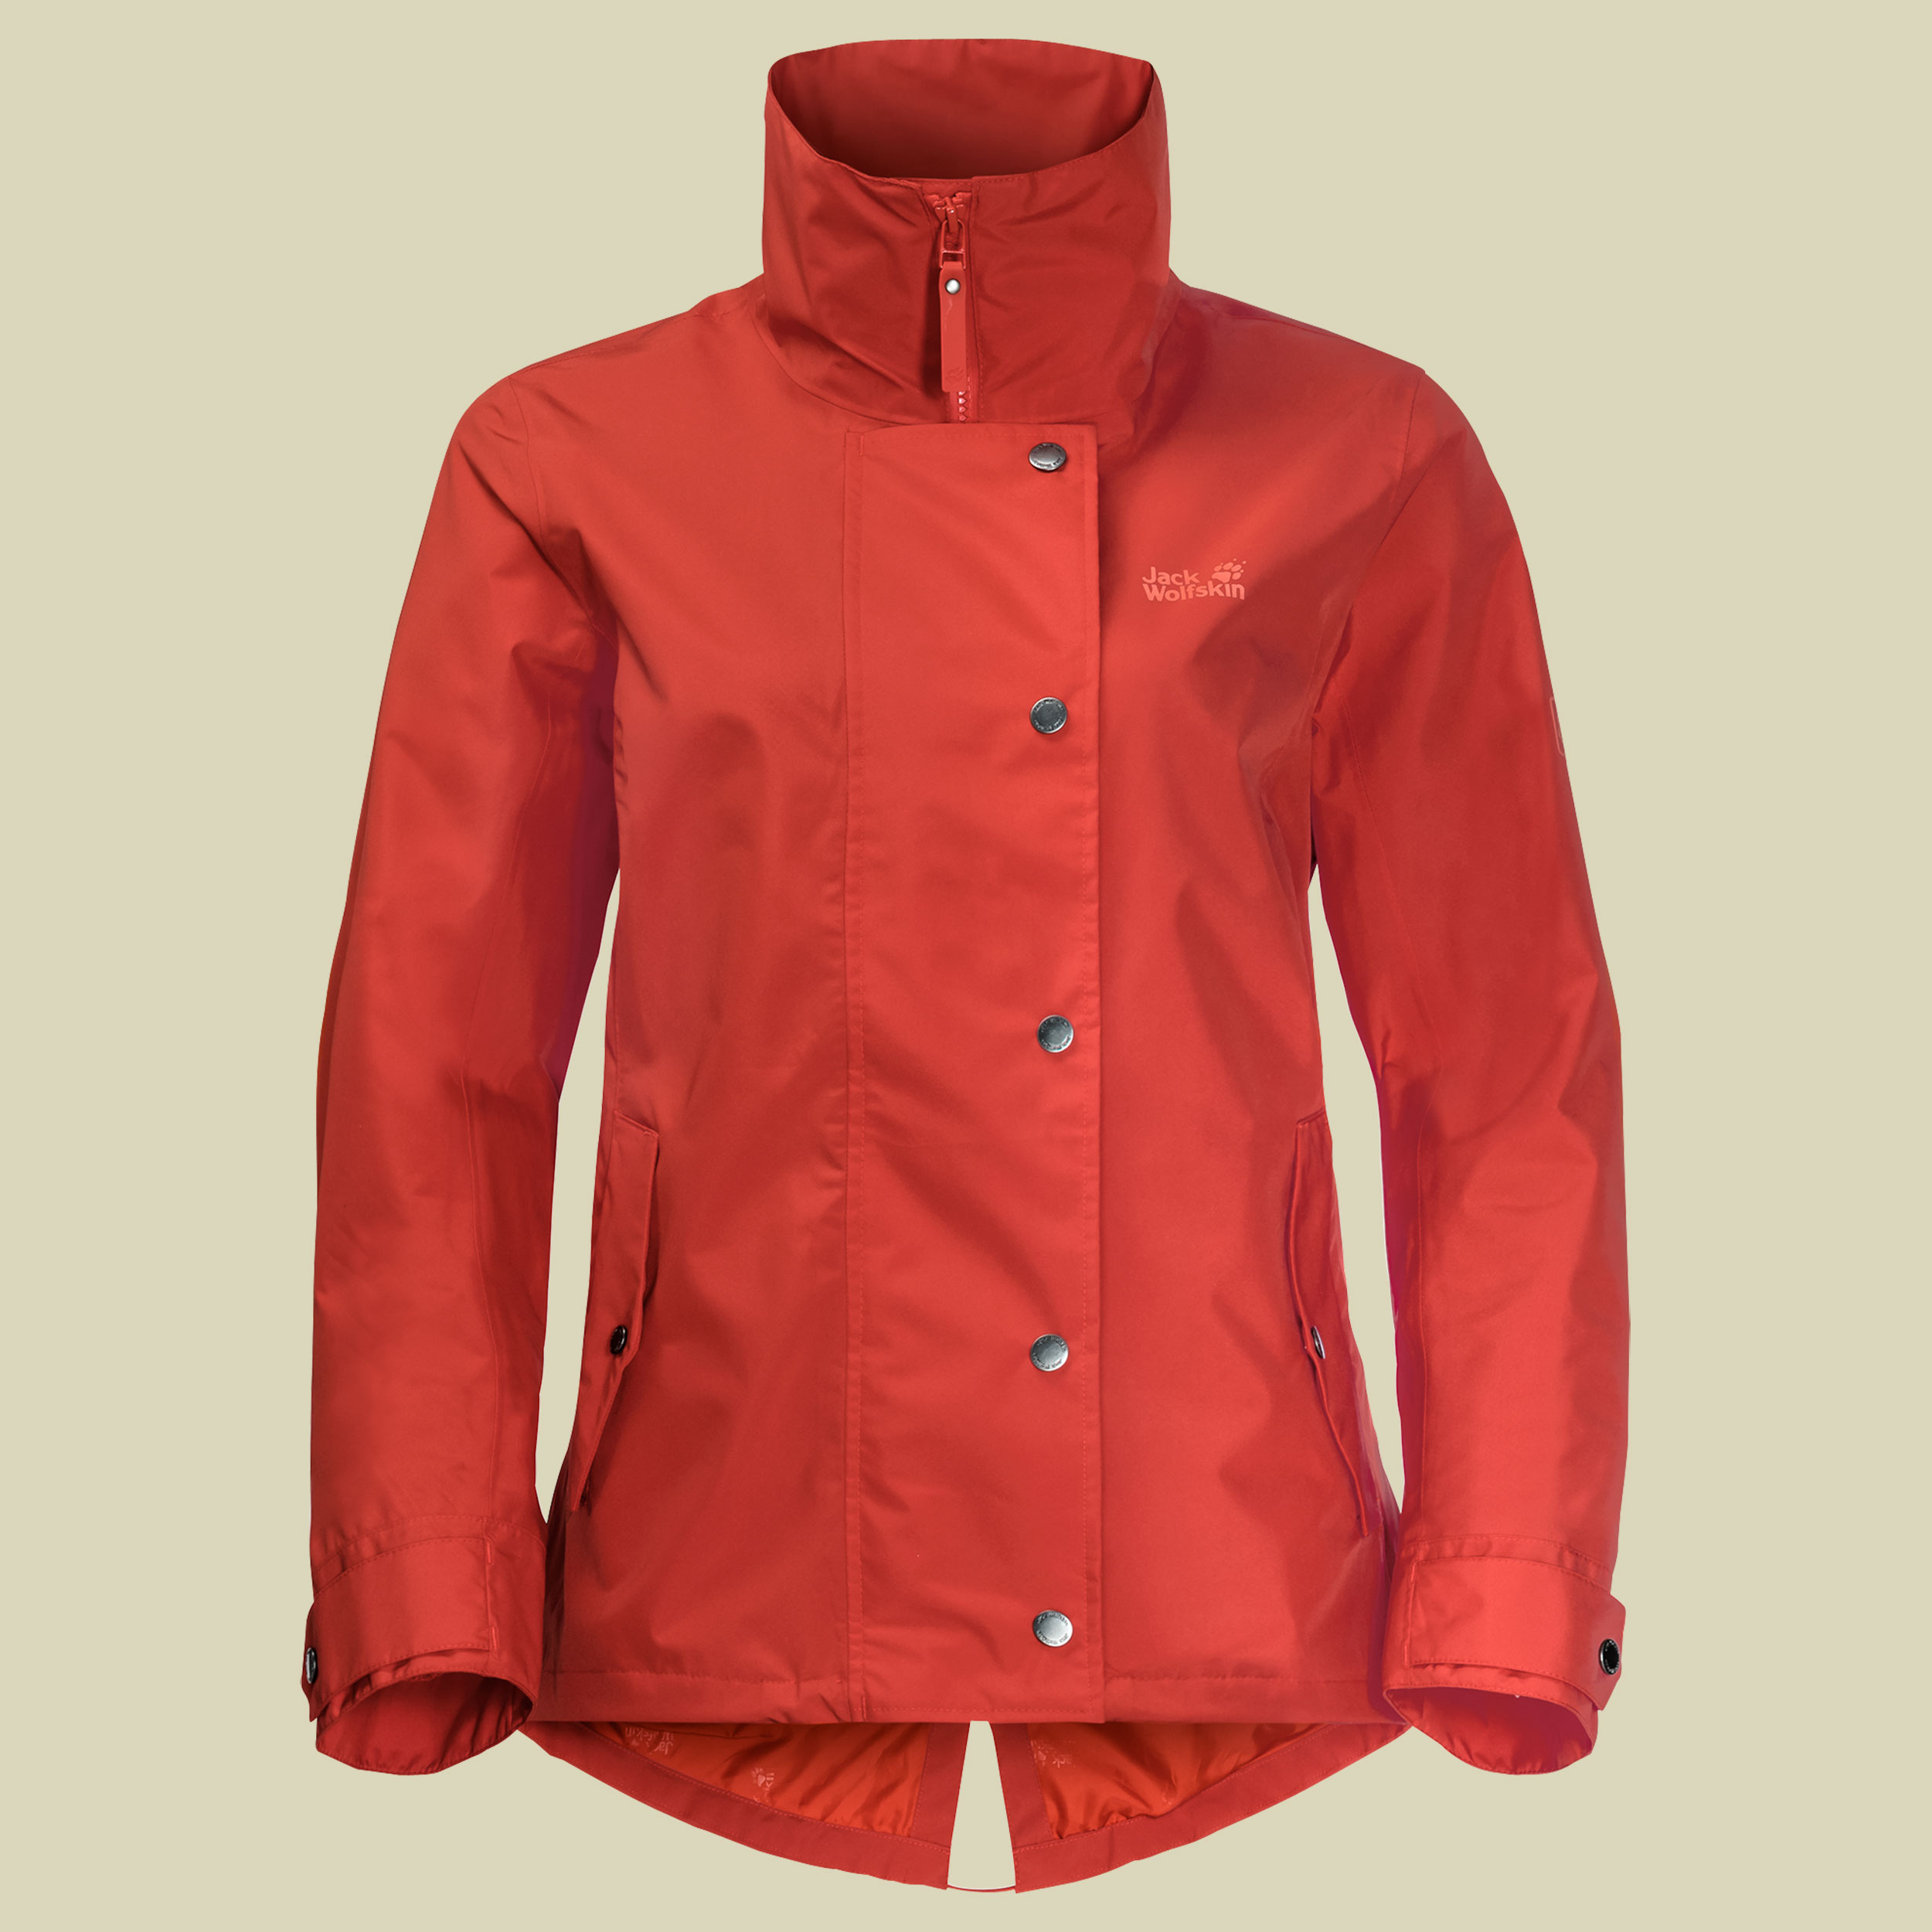 Newport Jacket Women Größe M Farbe volcano red